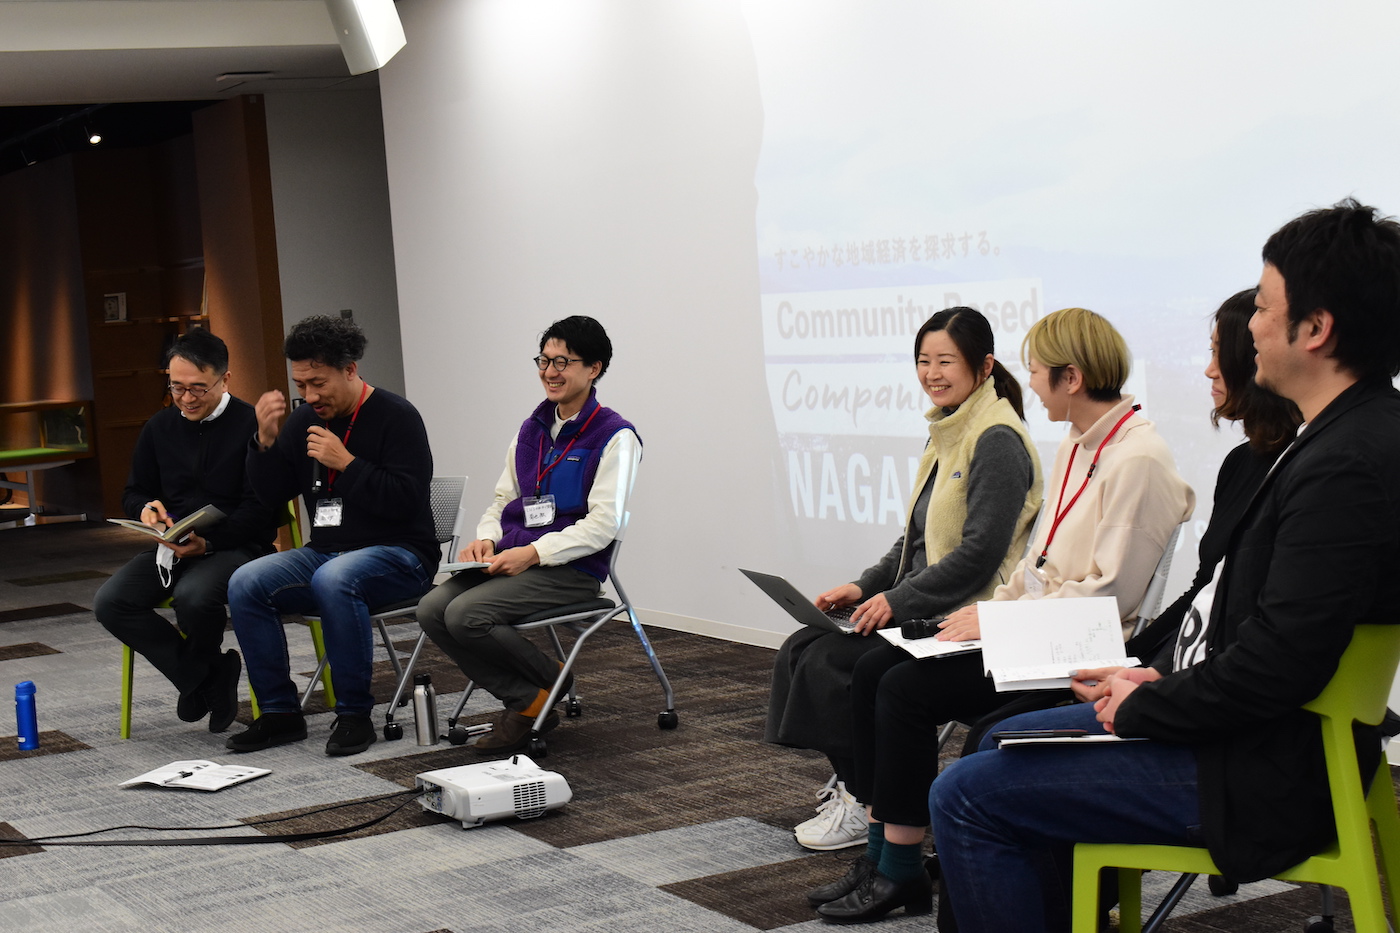 京都から鹿児島、そして長野へ｜Community Based Companies Forum NAGANO レポート